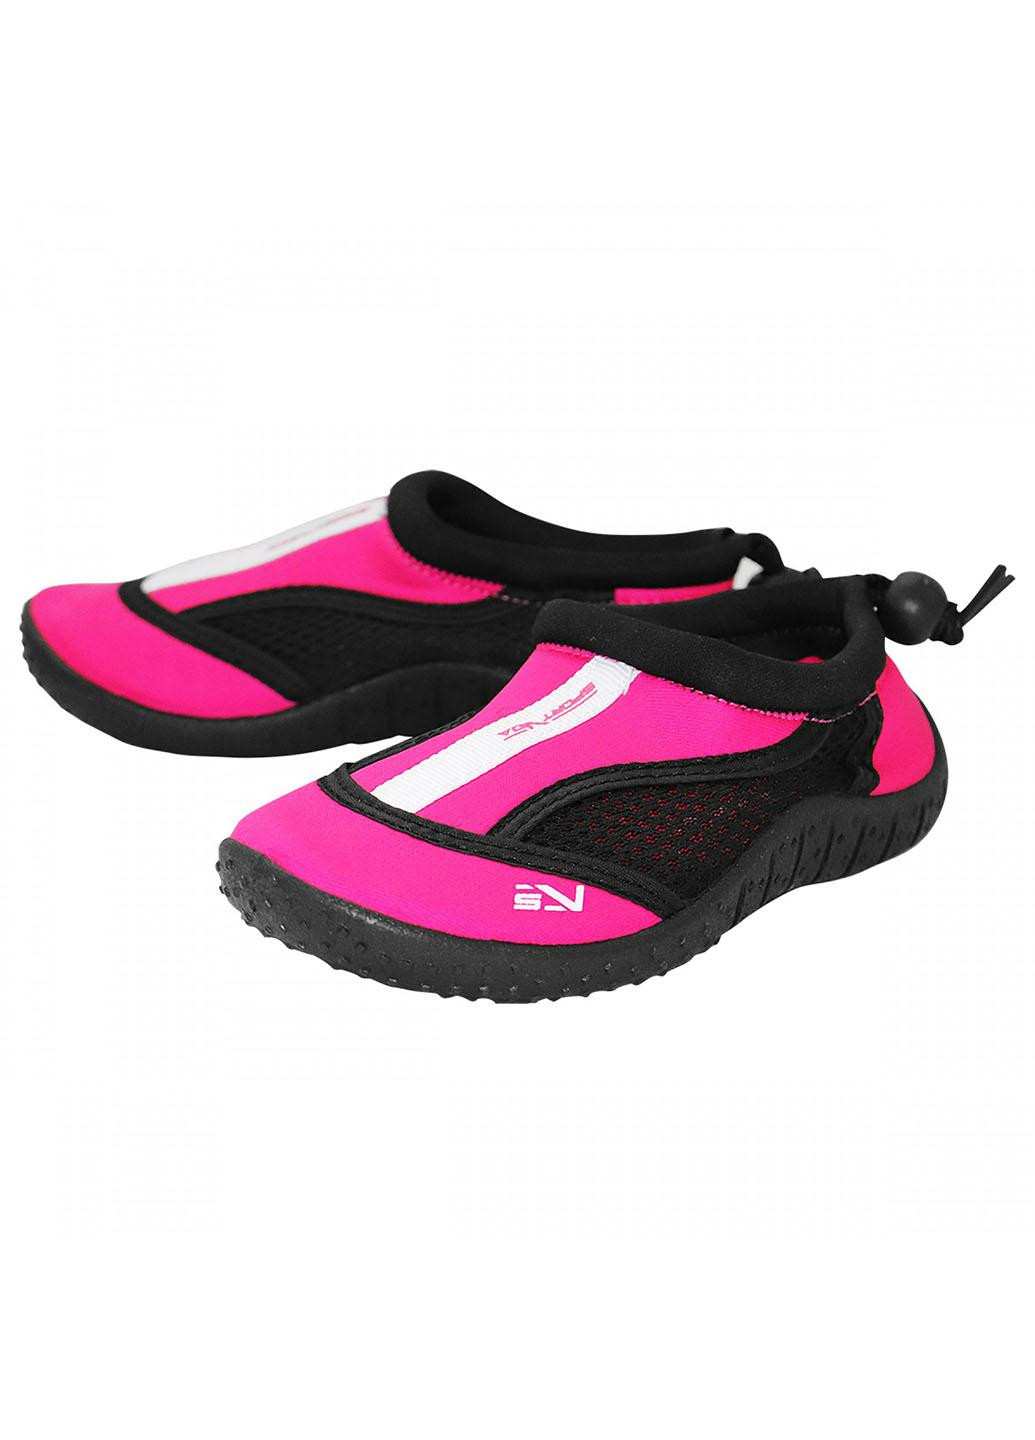 Обувь для пляжа и кораллов (аквашуз) SV-GY0001-R30 Size 30 Black/Pink SportVida (258486778)